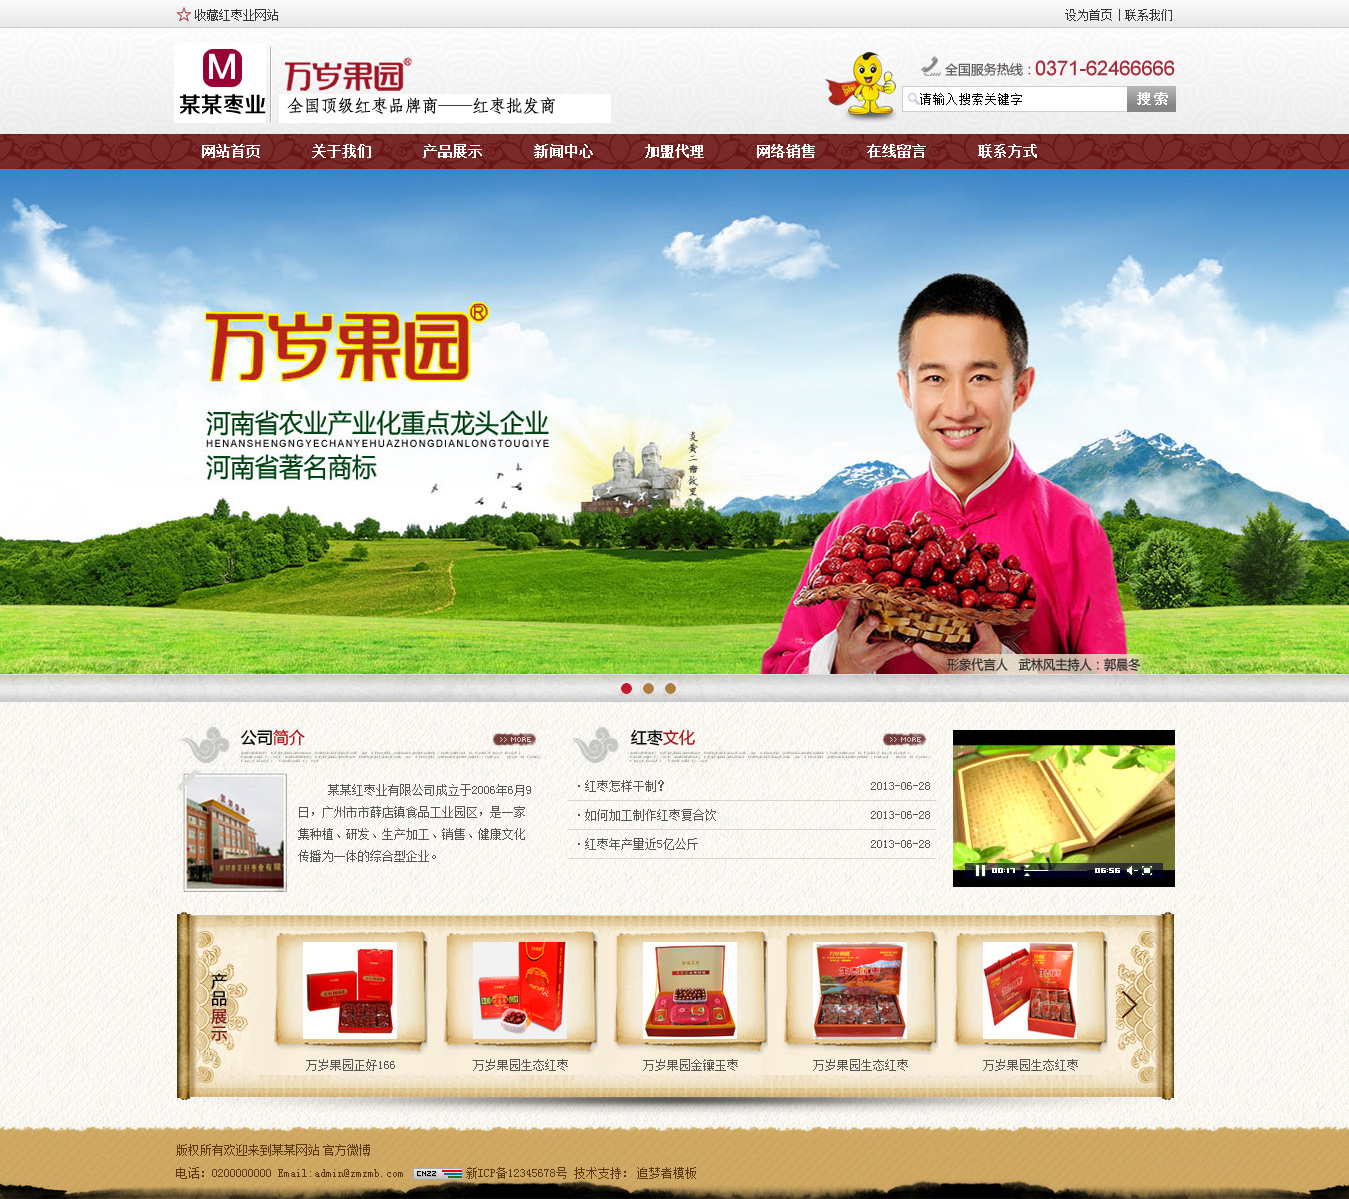 织梦红枣/干果等食品类公司企业产品展示网站模板